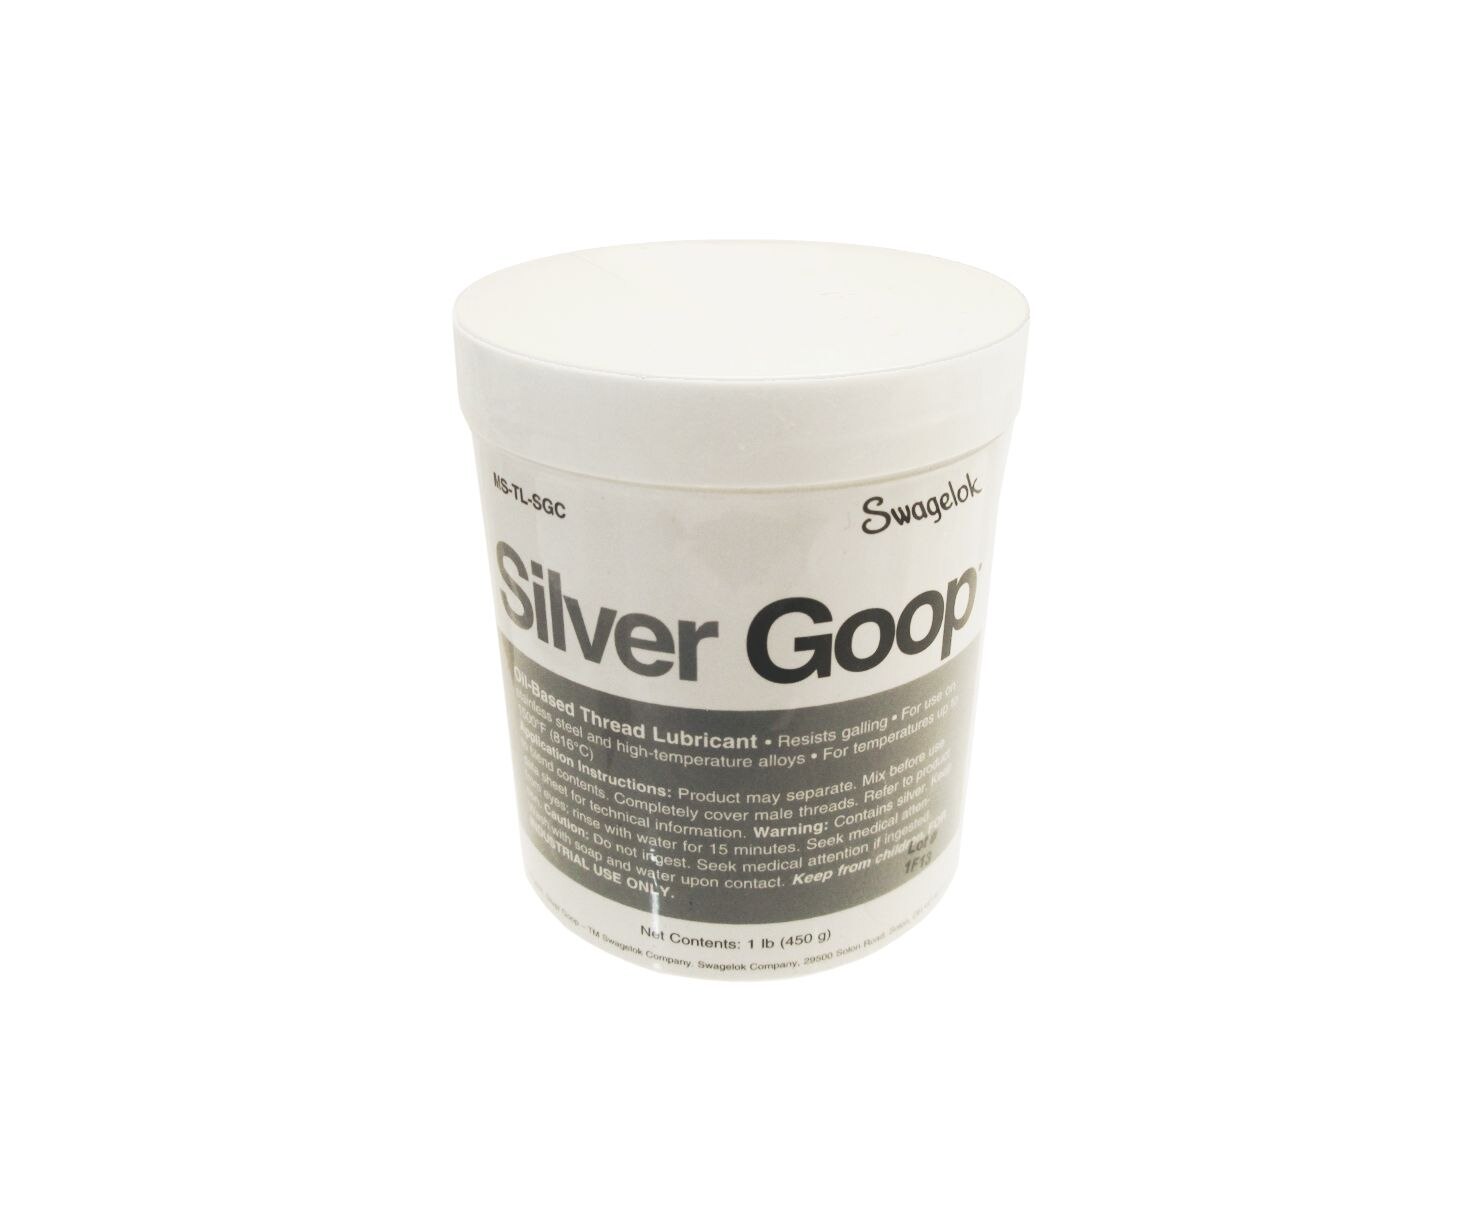 Livraison gratuite dans USA environ 0.45 kg SWAGELOK Silver Goop MS-TL-SGC fil Lubrifiant 1 Lb 